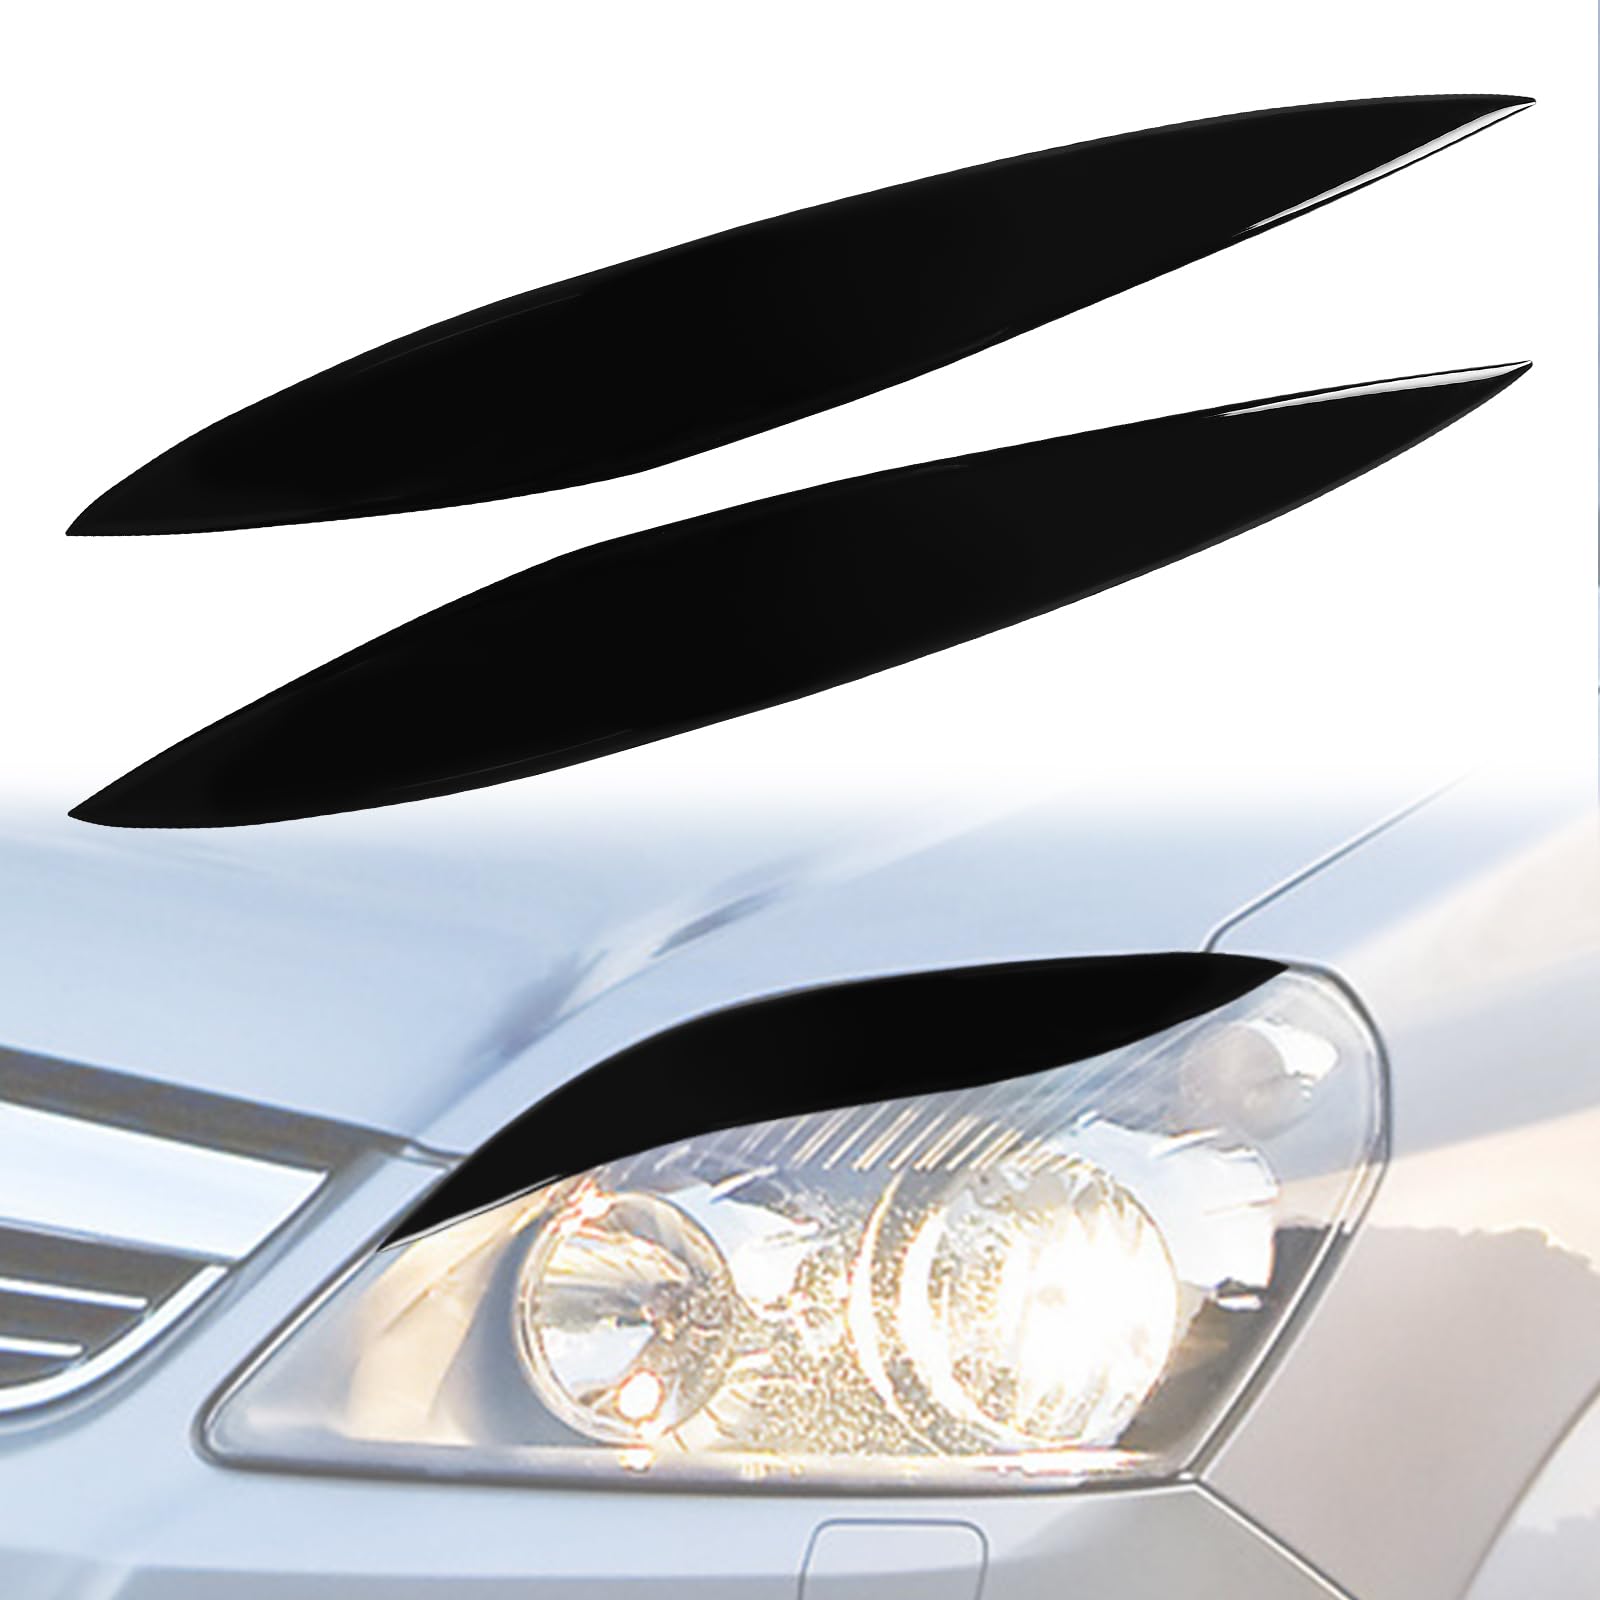 1 Paar Scheinwerfer Augenbrauen Ersatz für Opel Zafira B 2005-2011, Scheinwerfer Augenlid Augenbrauenabdeckung, Scheinwerfer Augenlid Aufkleber (für Zafira B 2005-2011) von Soekodu